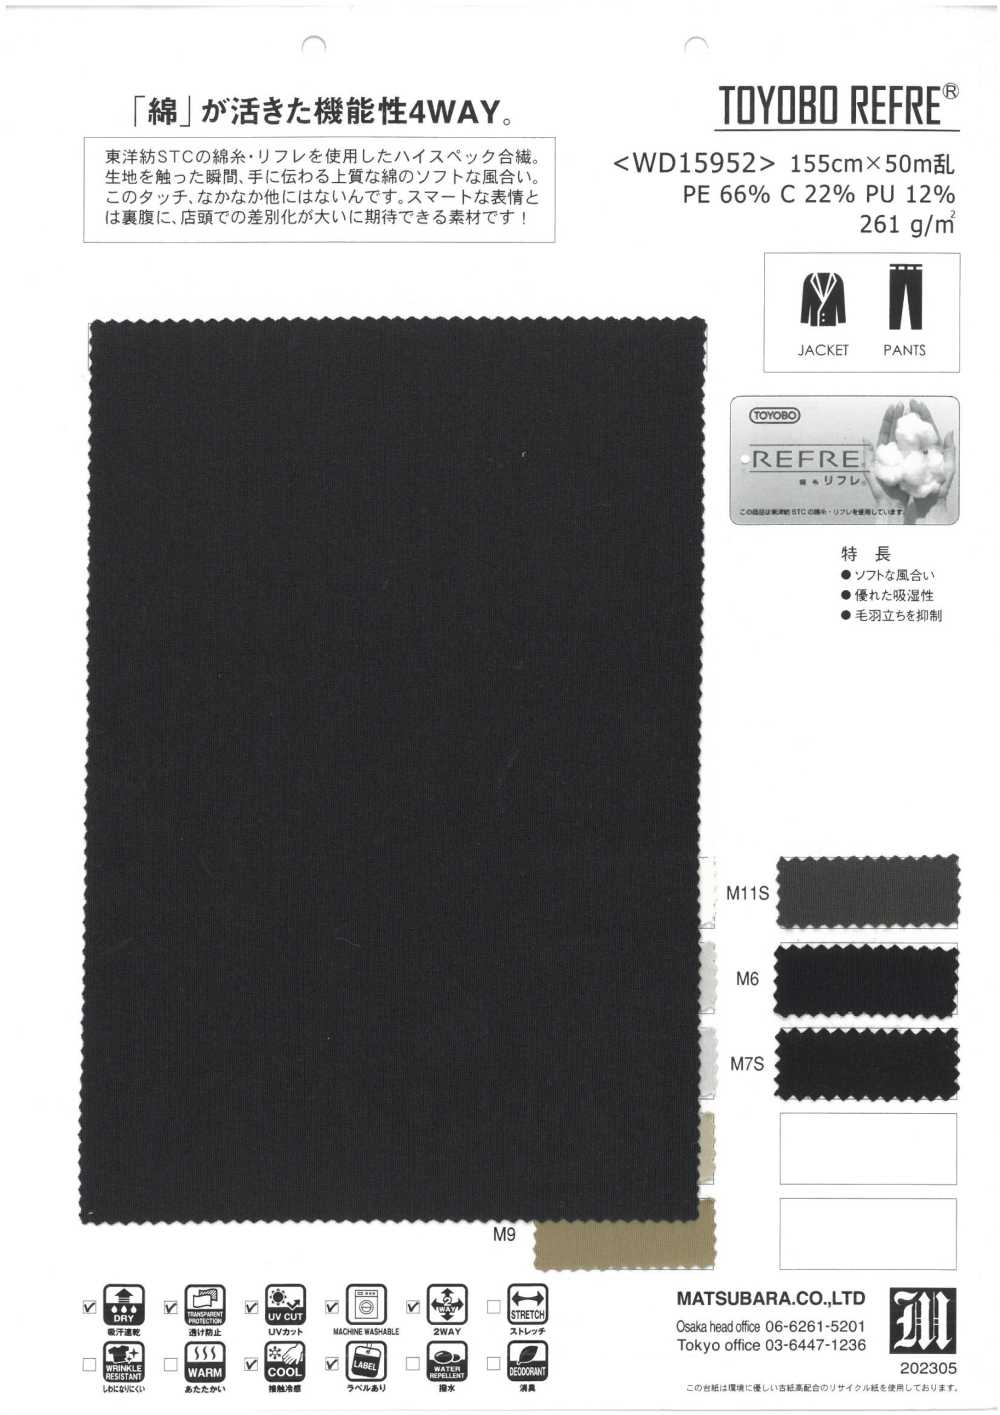 WD15952 TOYOBO REFRE®[Fabrication De Textile] Matsubara